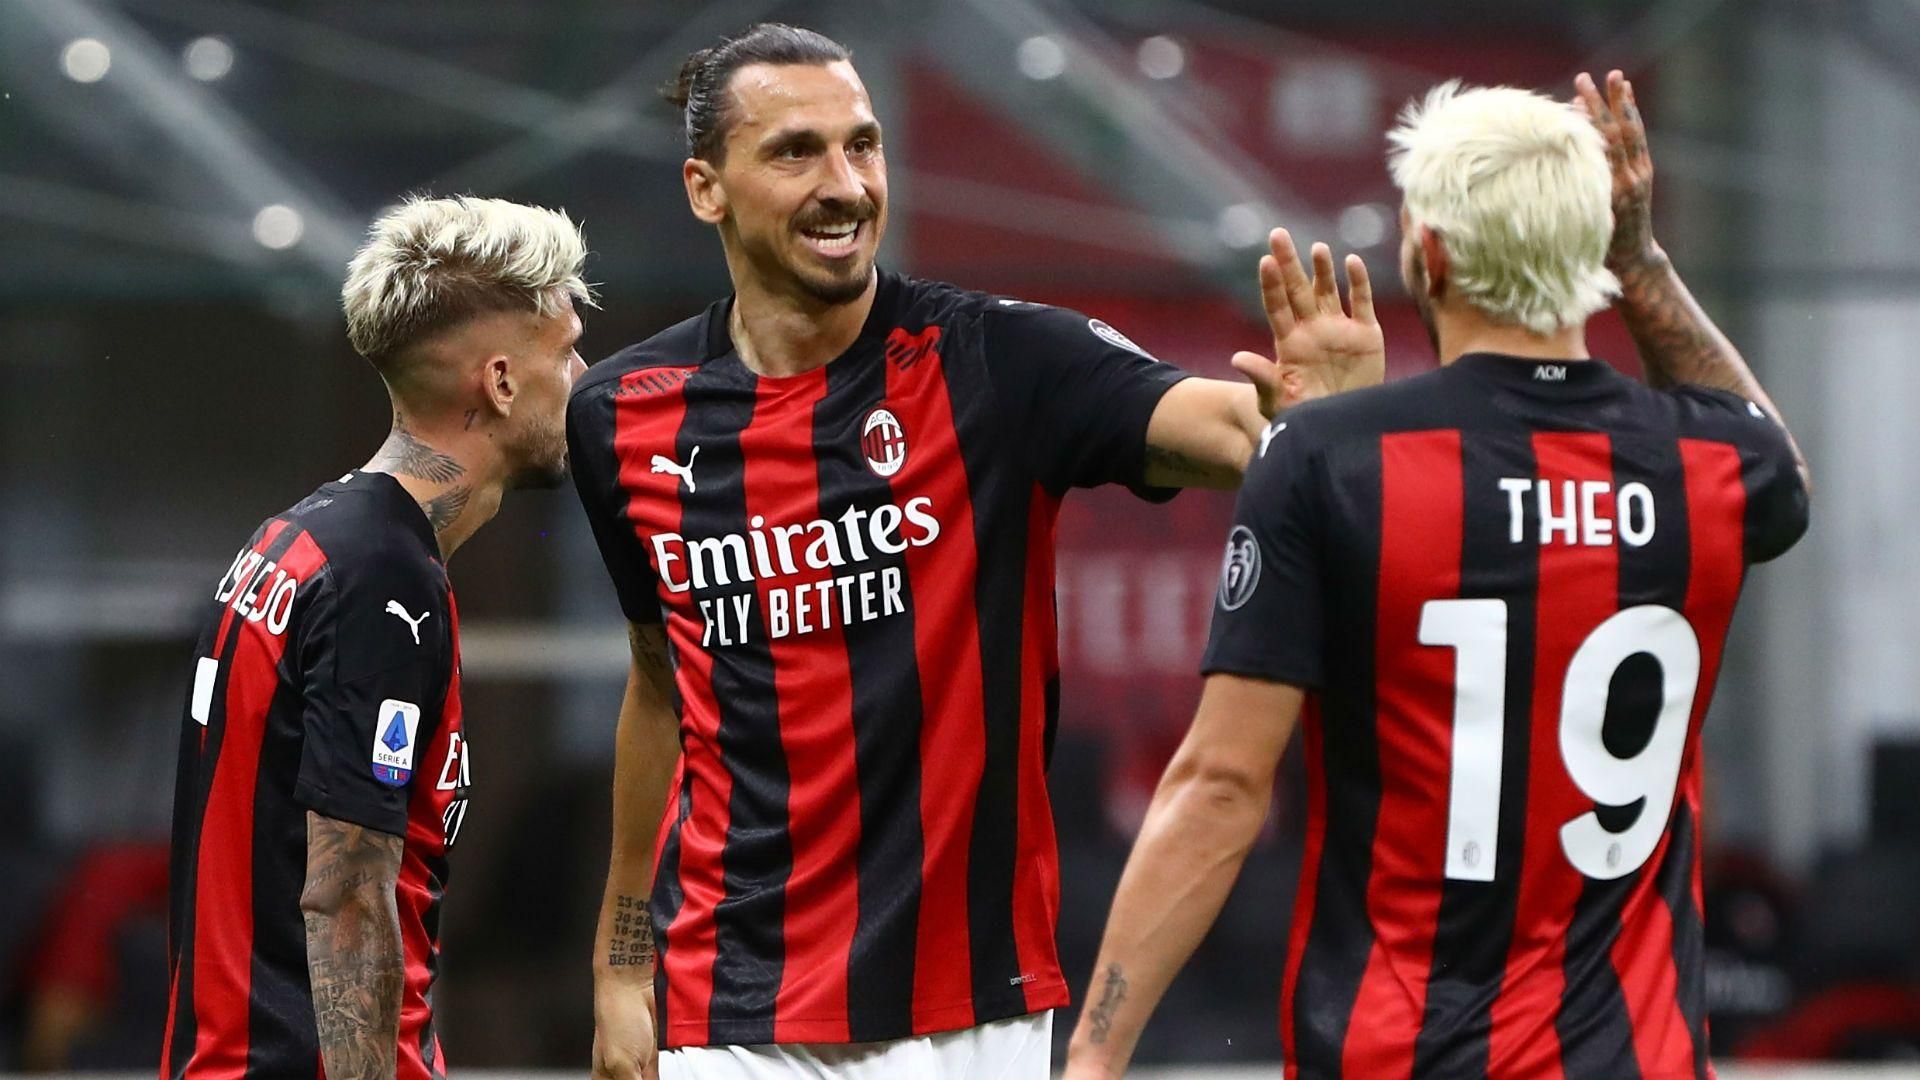 Селтик – Милан: счет и обзор матча 22.10.2020 – Лига Европы